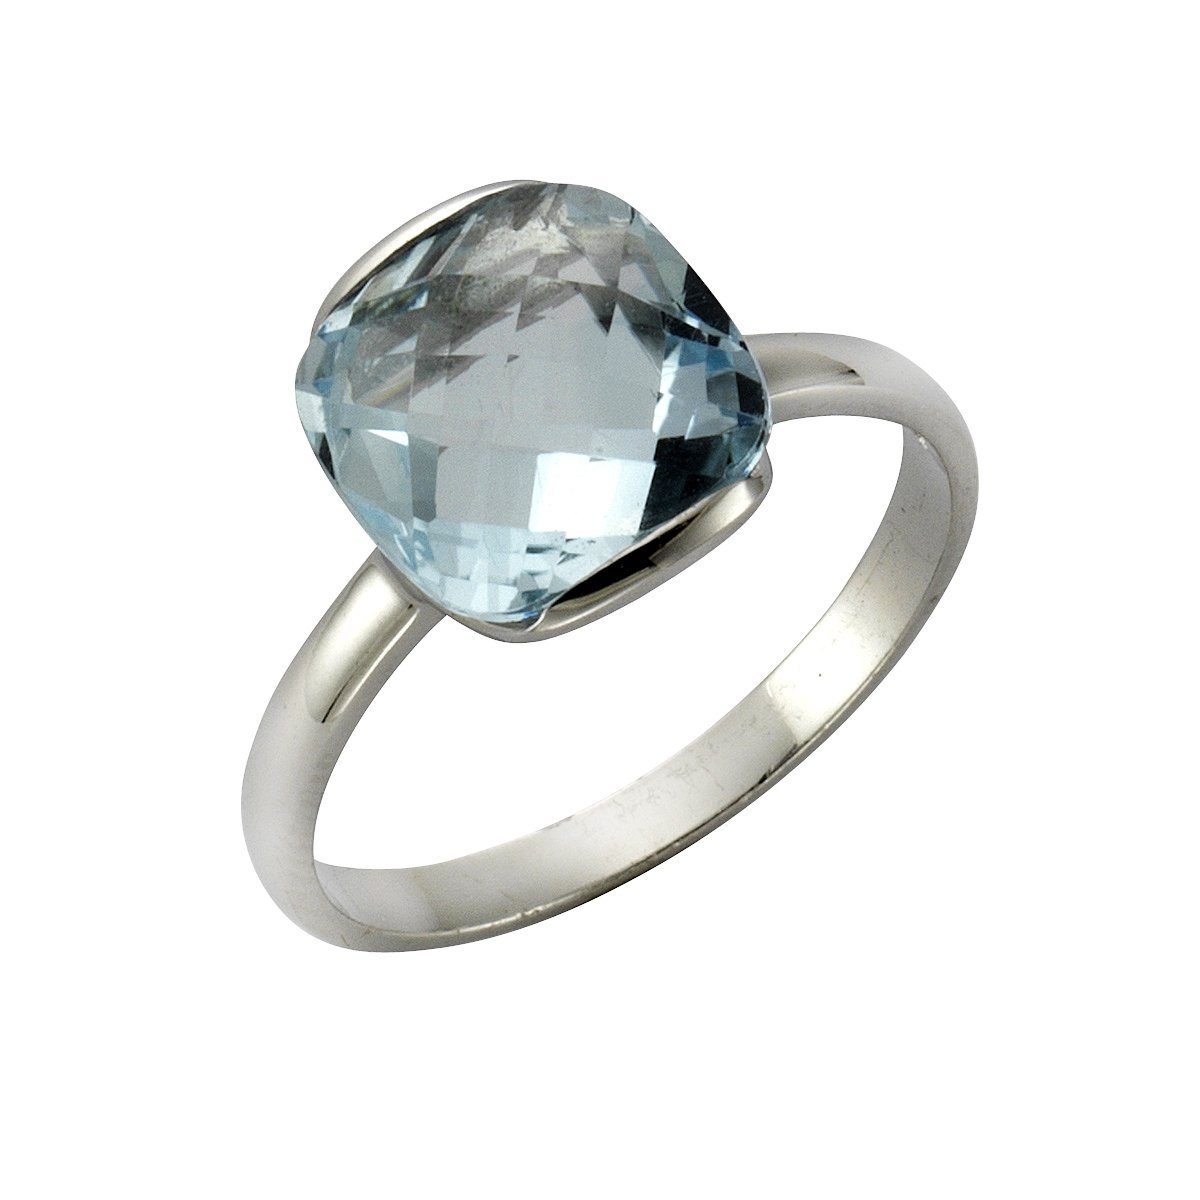 ZEEme Jewelry Damen Ring 925 Sterling Silber rhodiniert Mondstein weiß 16x12mm